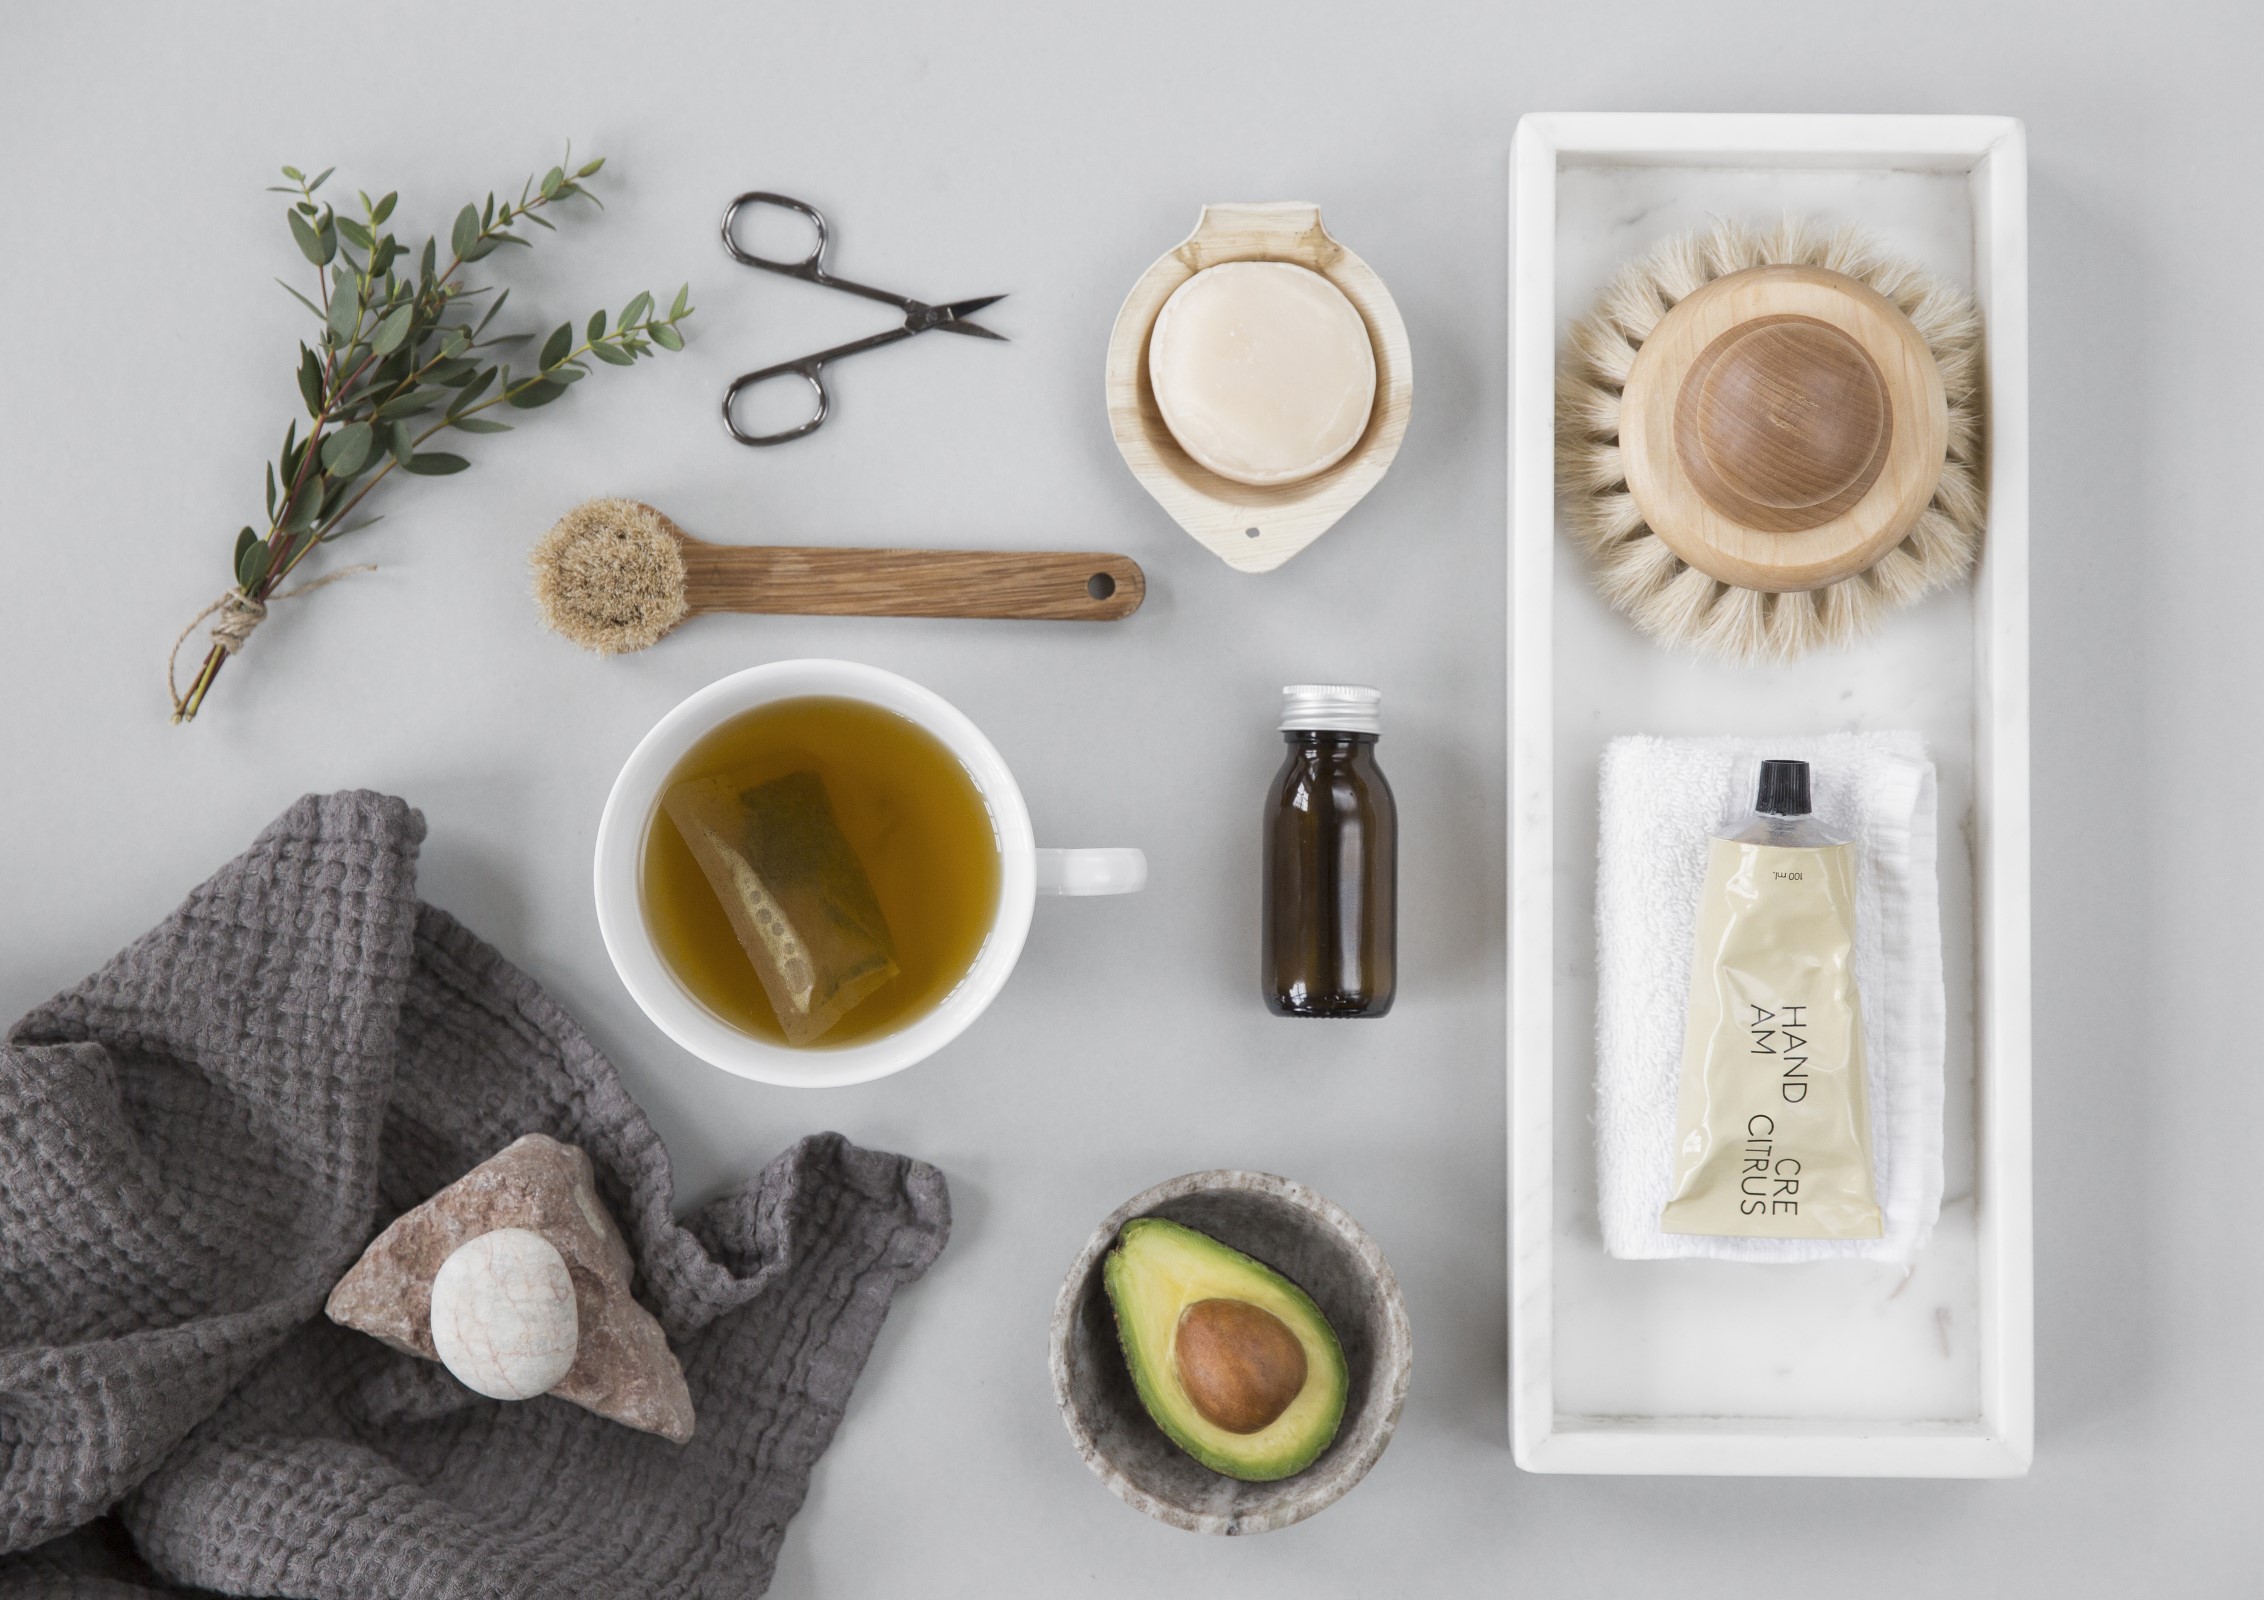 Bilde av kosmetikk og duftoljer, tekopp, krydderkvast, avocado i kopp, saks og håndkle med stein på.